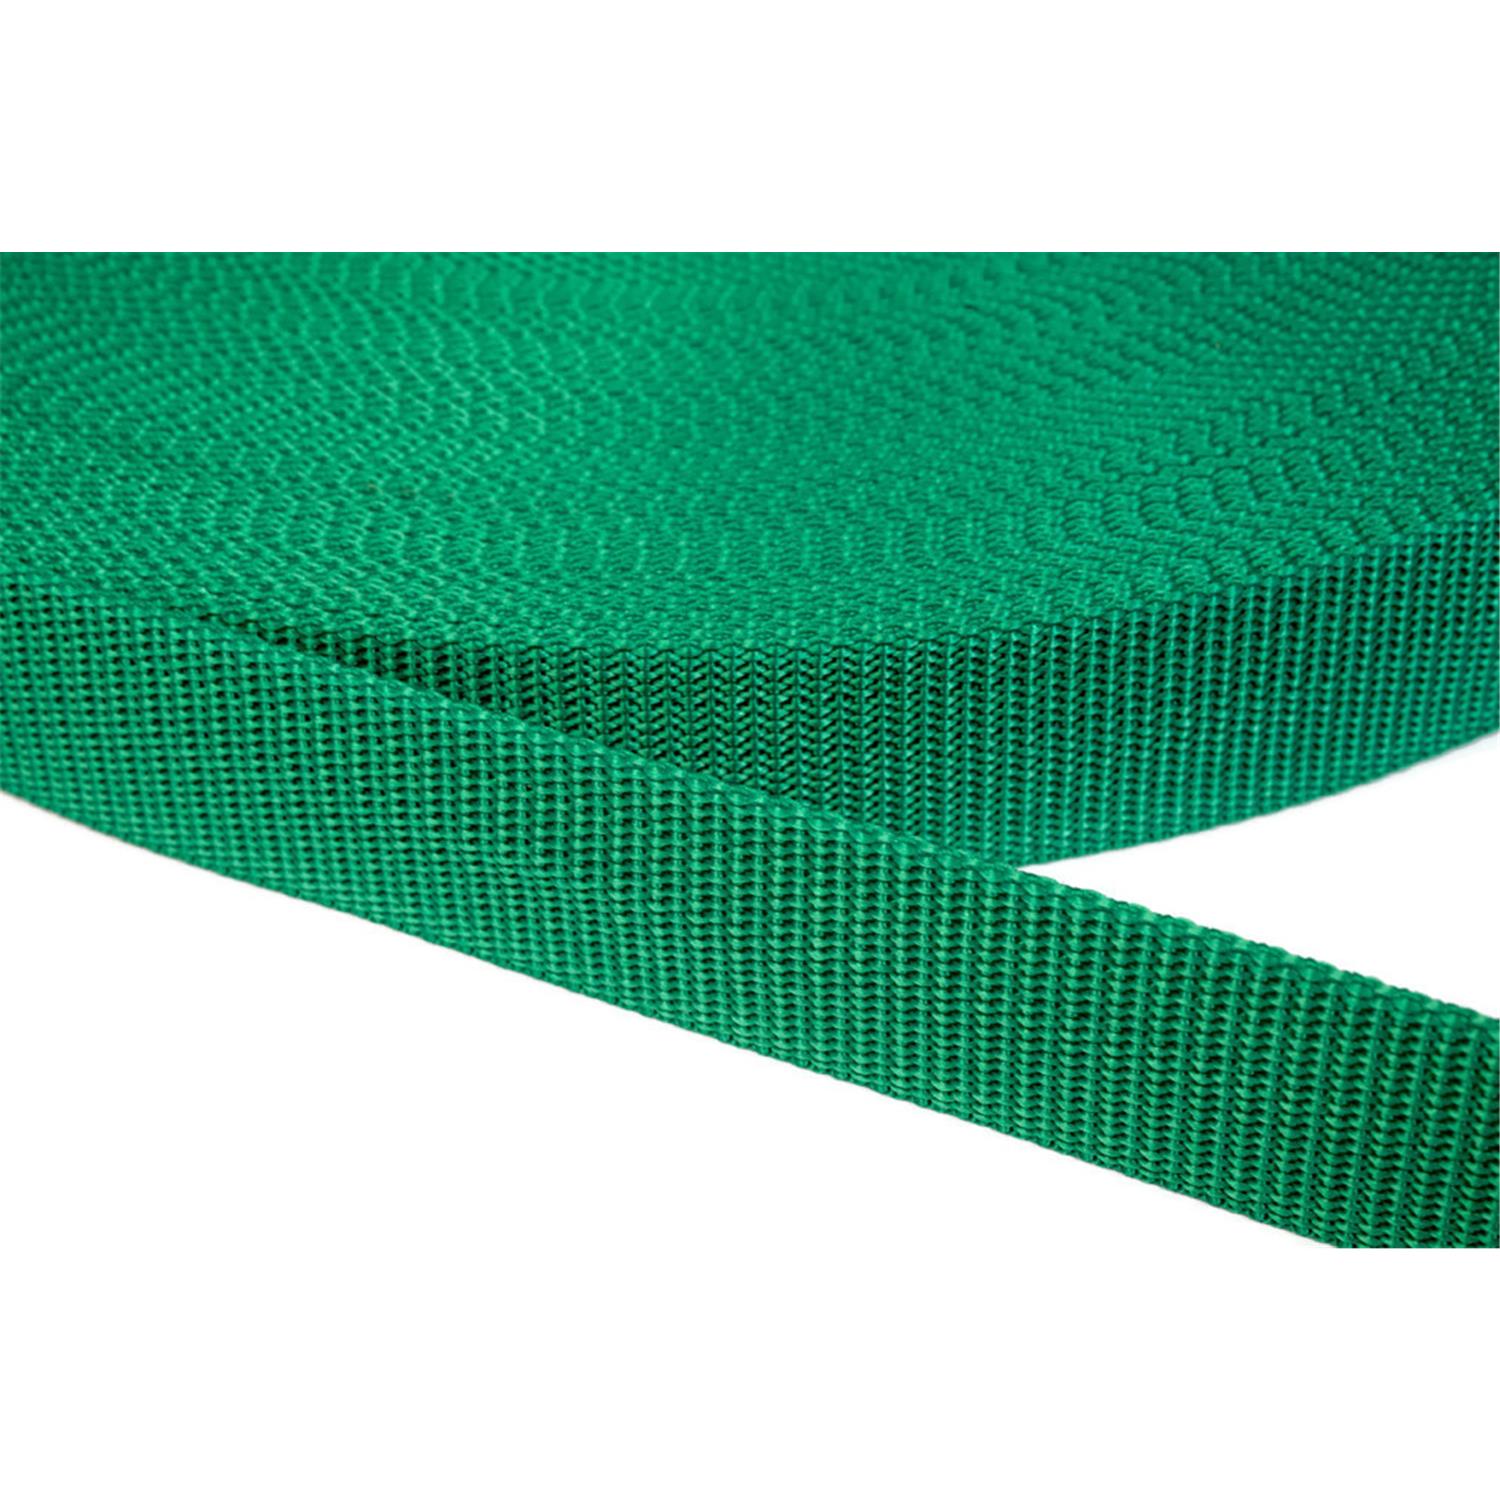 Gurtband 50mm breit aus Polypropylen in 41 Farben 34 - grün 6 Meter